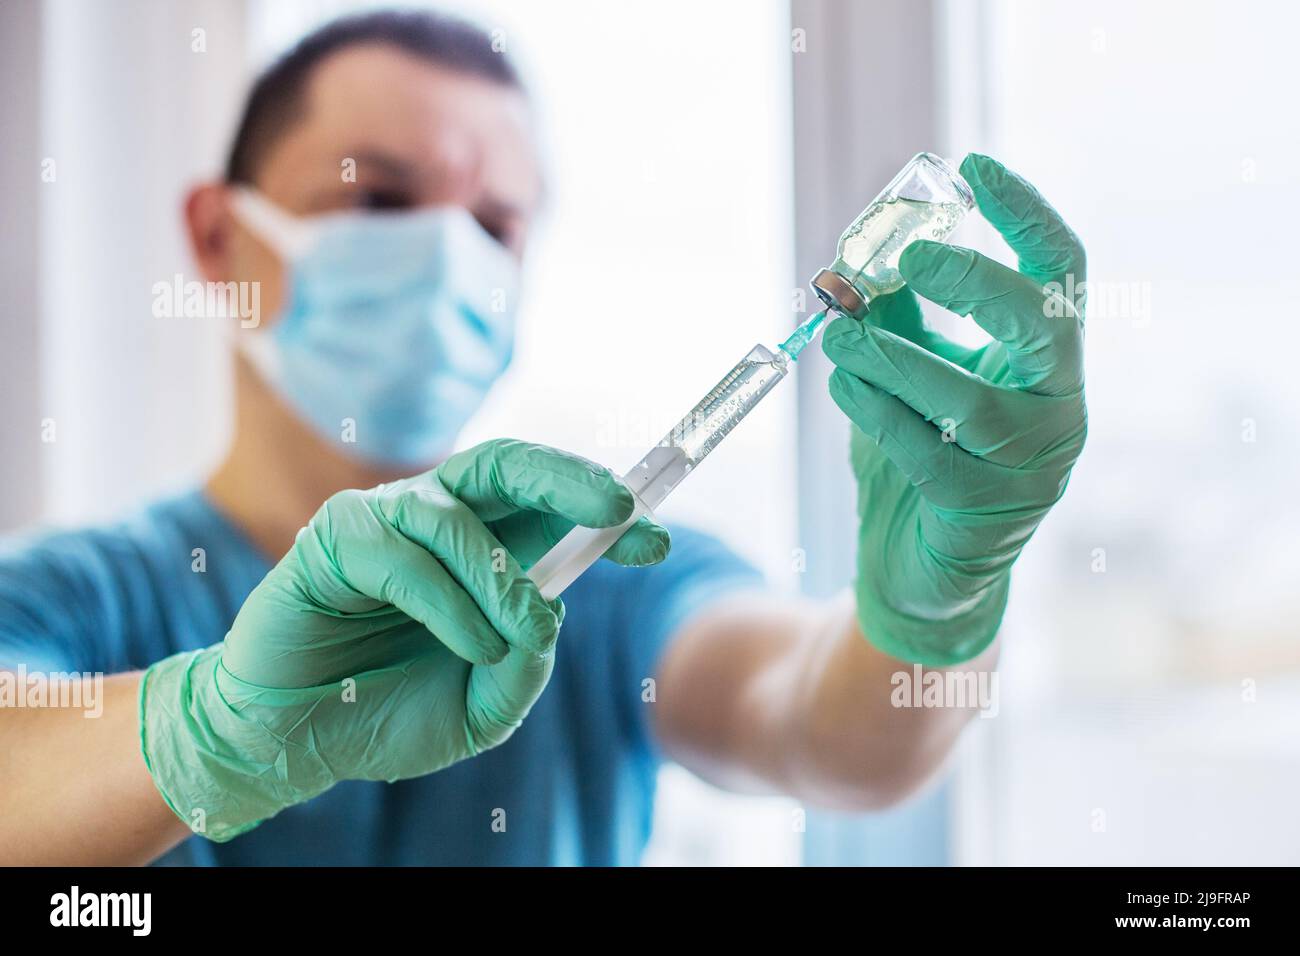 Mains du médecin remplissant une seringue. Homme mains dans des gants bleus tenant le vaccin. Médecine, vaccination et concept de drogue. Médicament flacon dose injection Banque D'Images